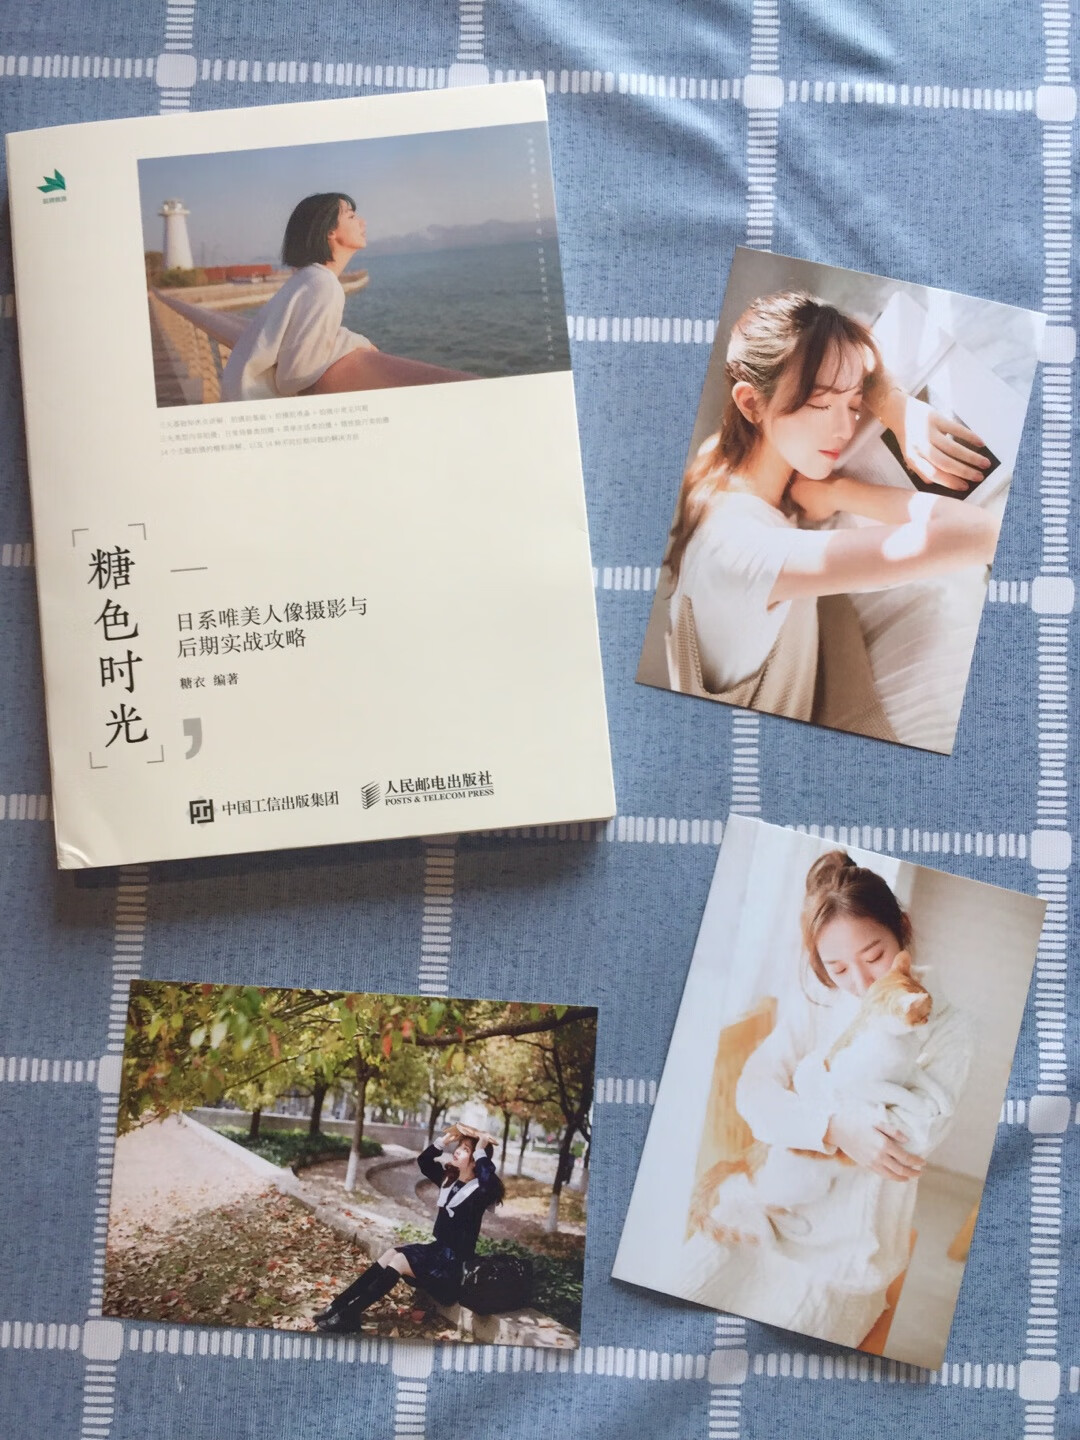 随书附赠了很漂亮的明信片(?‾? ?? ‾??)内容丰富，浅显易懂，非常推荐喜欢小清新风格的人像摄影爱好者入手收藏~(=?ω?)?